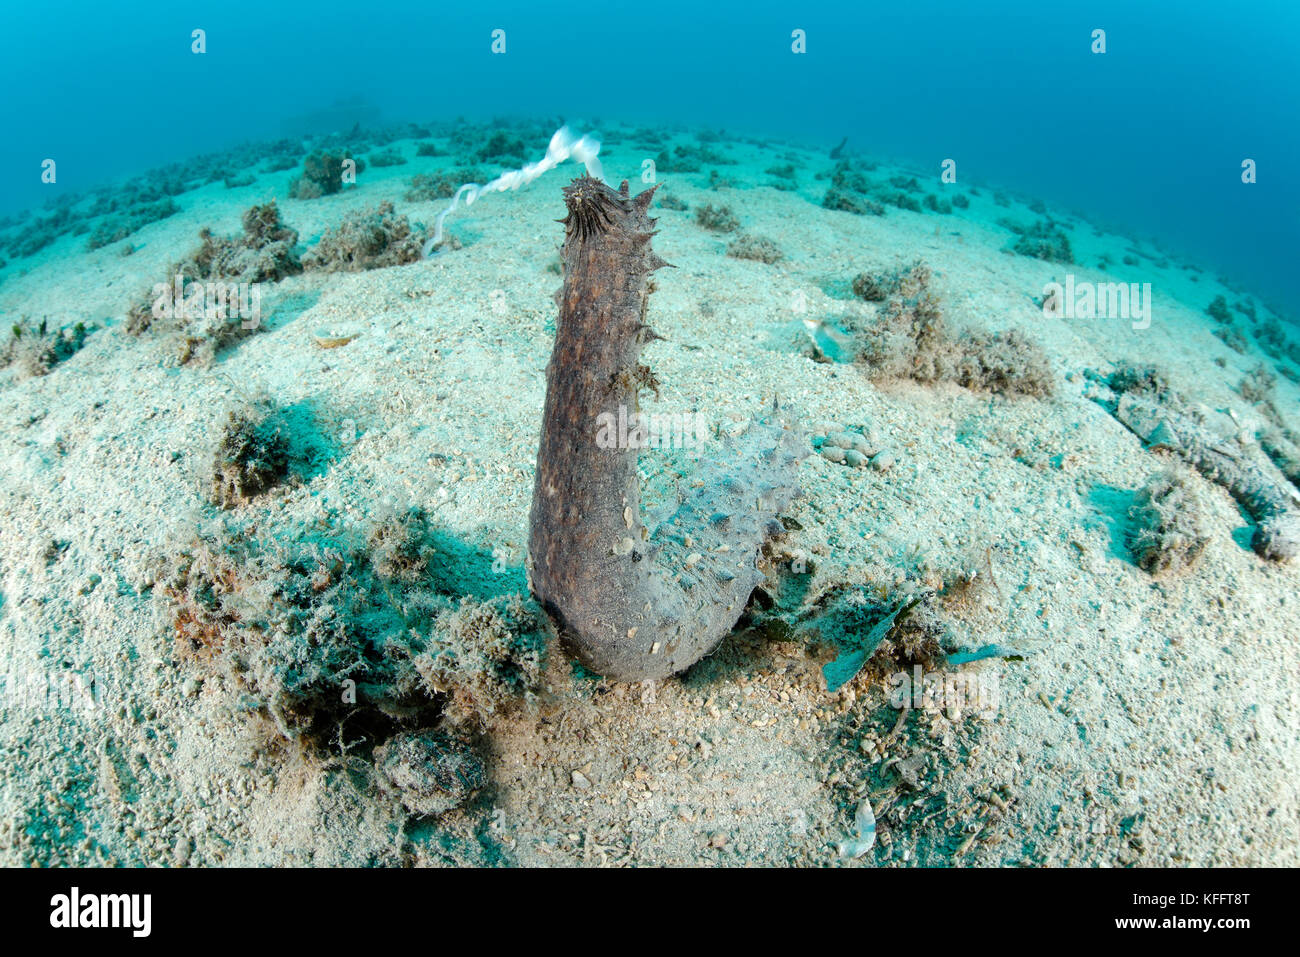 Holothuria tubulosa, Tubular sea cucumber, during spawning, Adriatic Sea, Mediterranean Sea, Biograd, Dalmatia, Croatia Stock Photo